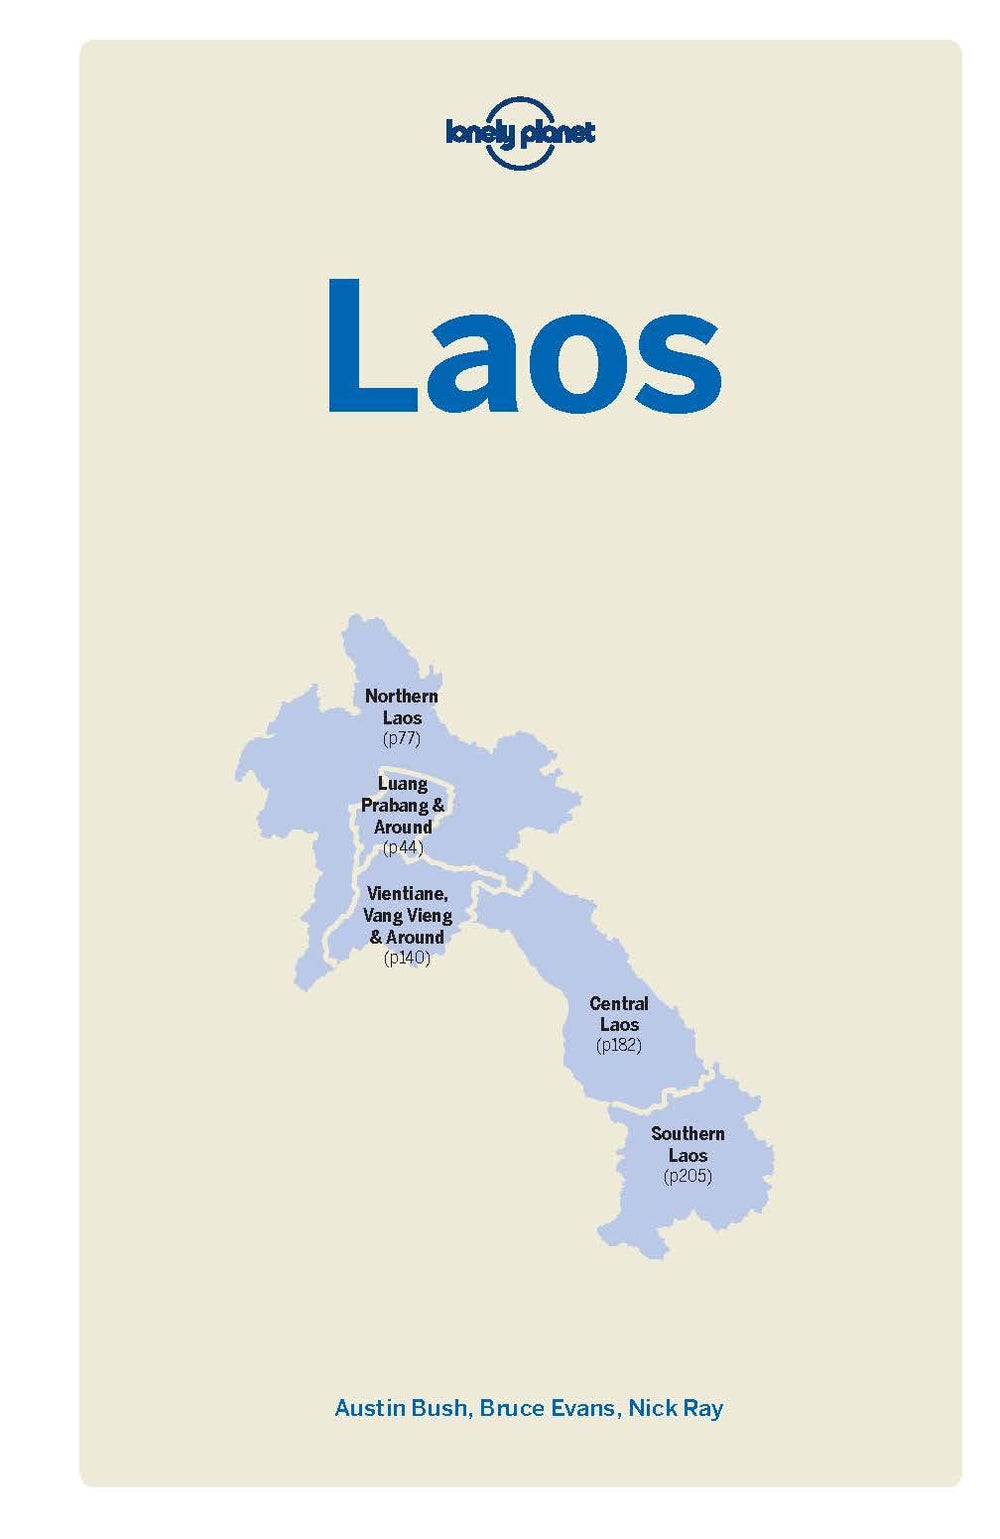 Guide de voyage (en anglais) - Laos | Lonely Planet guide de voyage Lonely Planet 